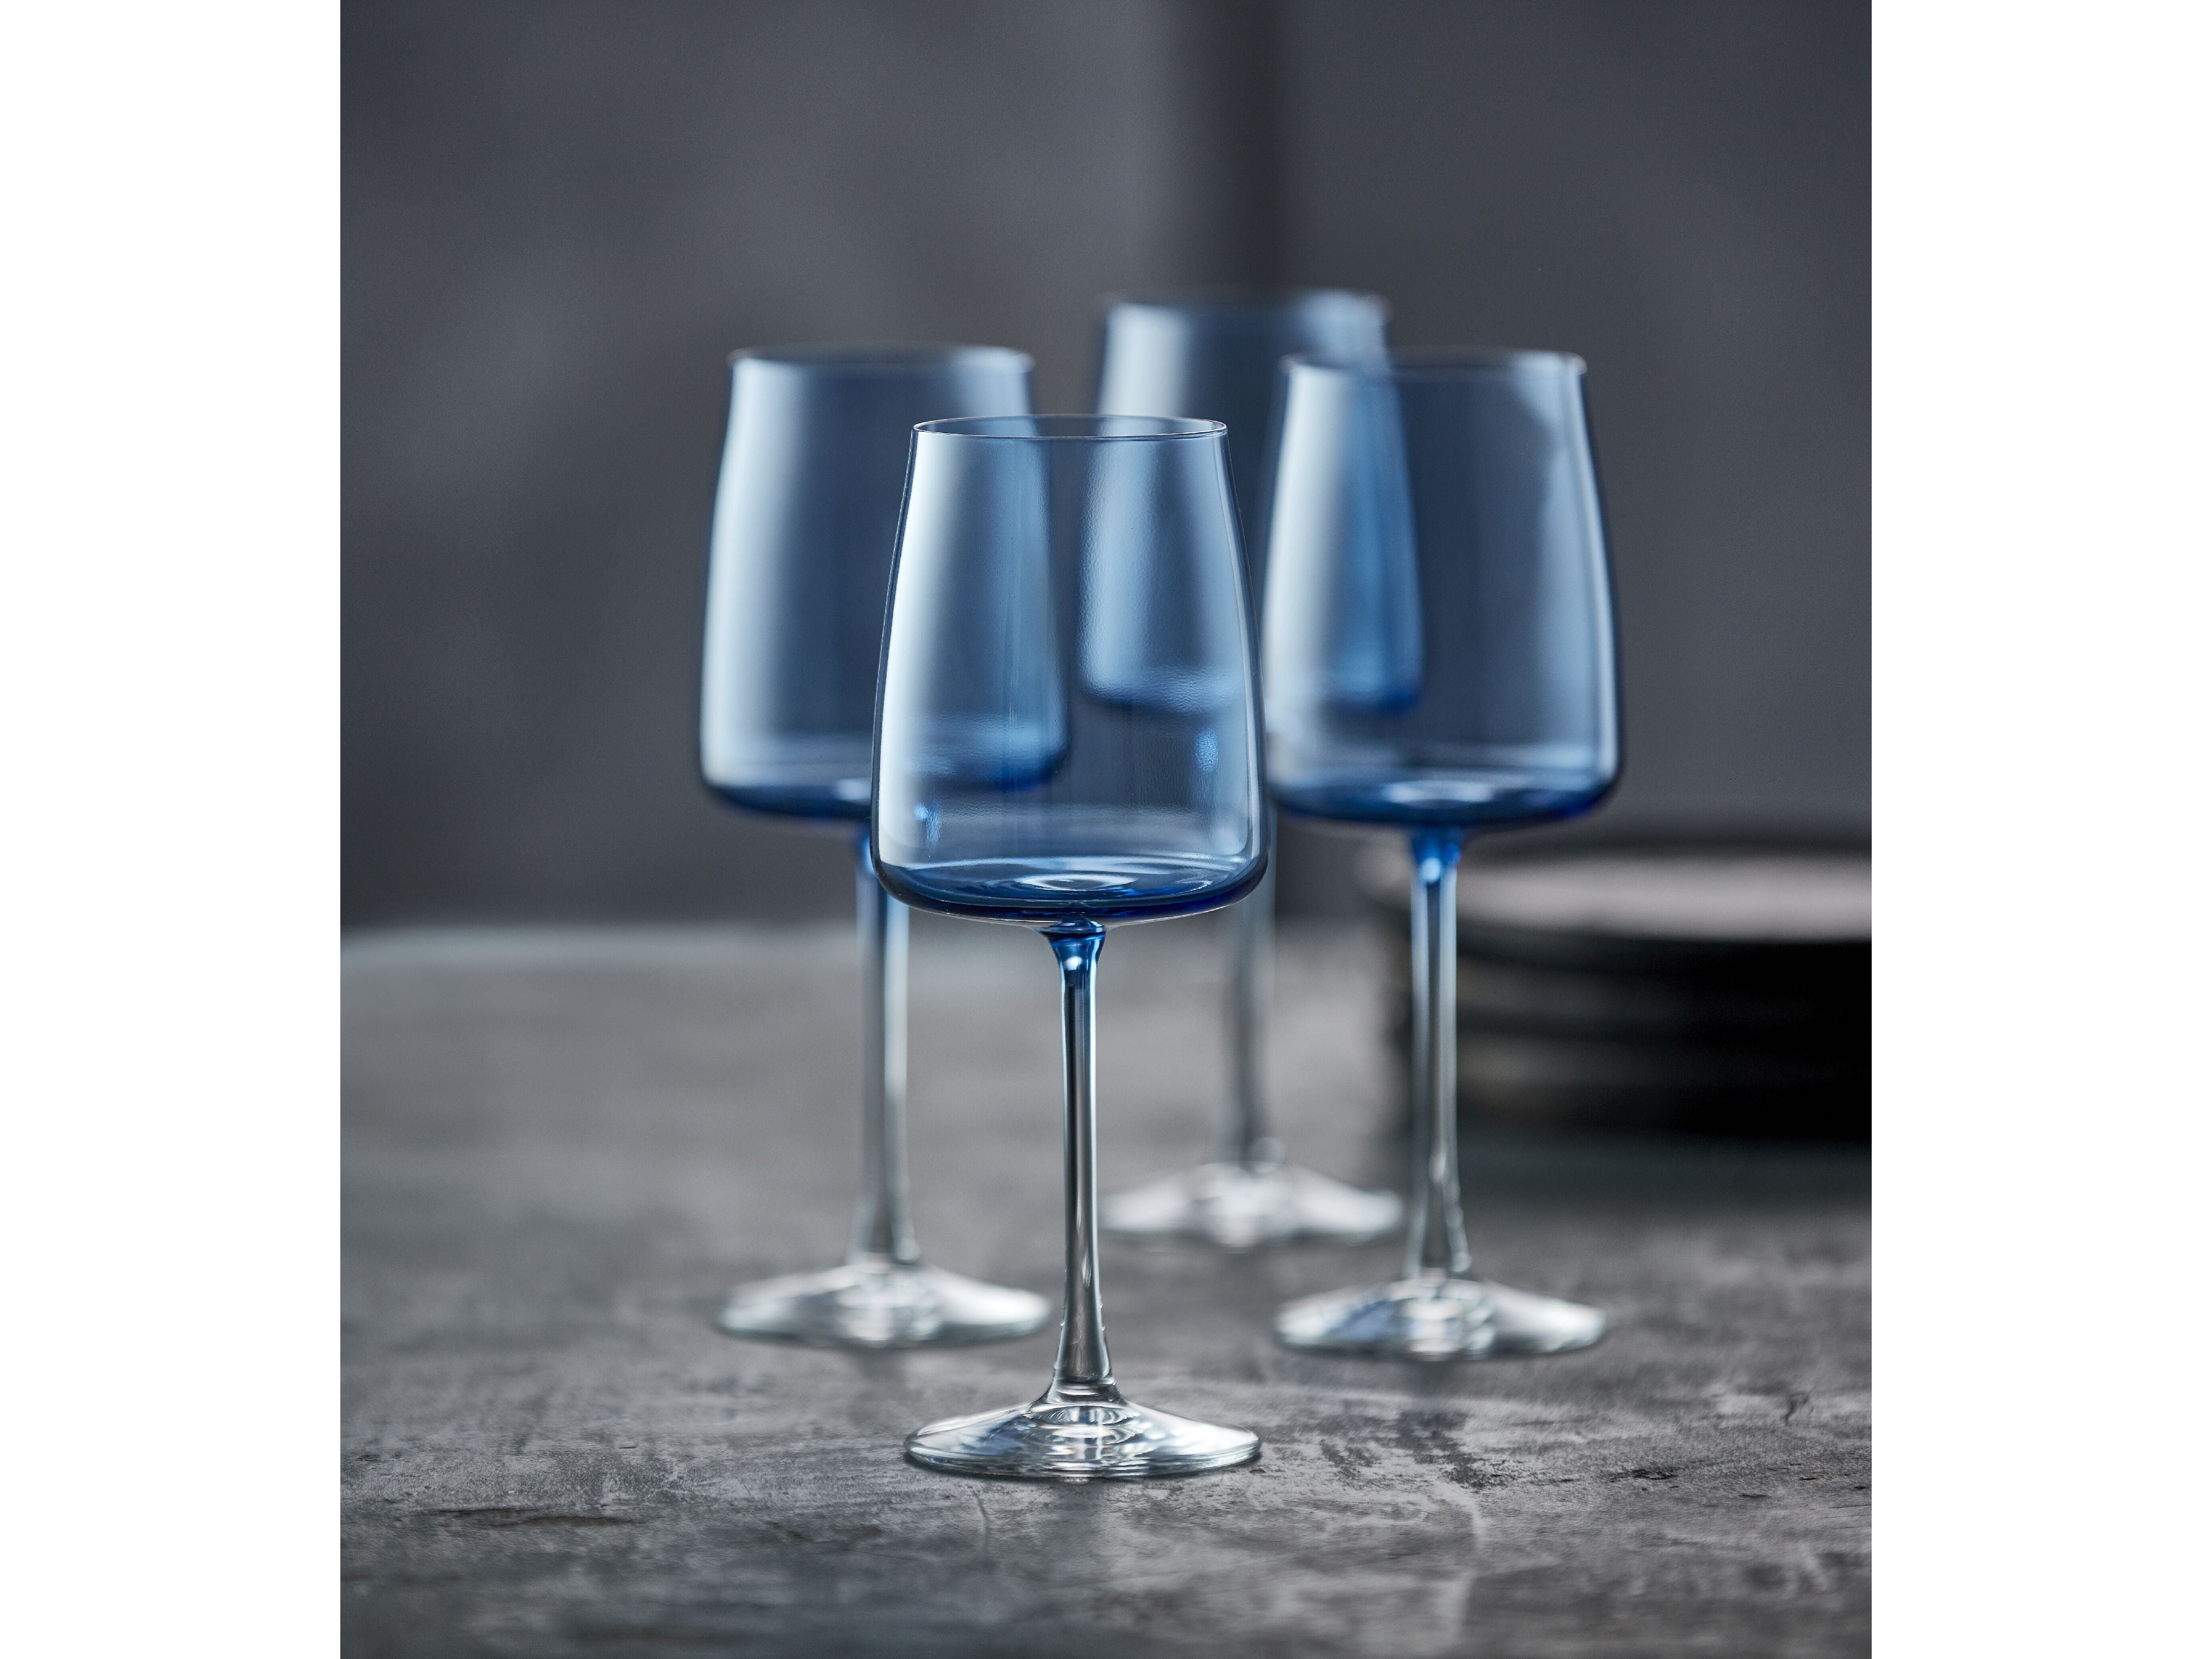 Lyngby Glas Krystal Zero Kieliszek do białego wina 43 Cl 4 szt., niebieski